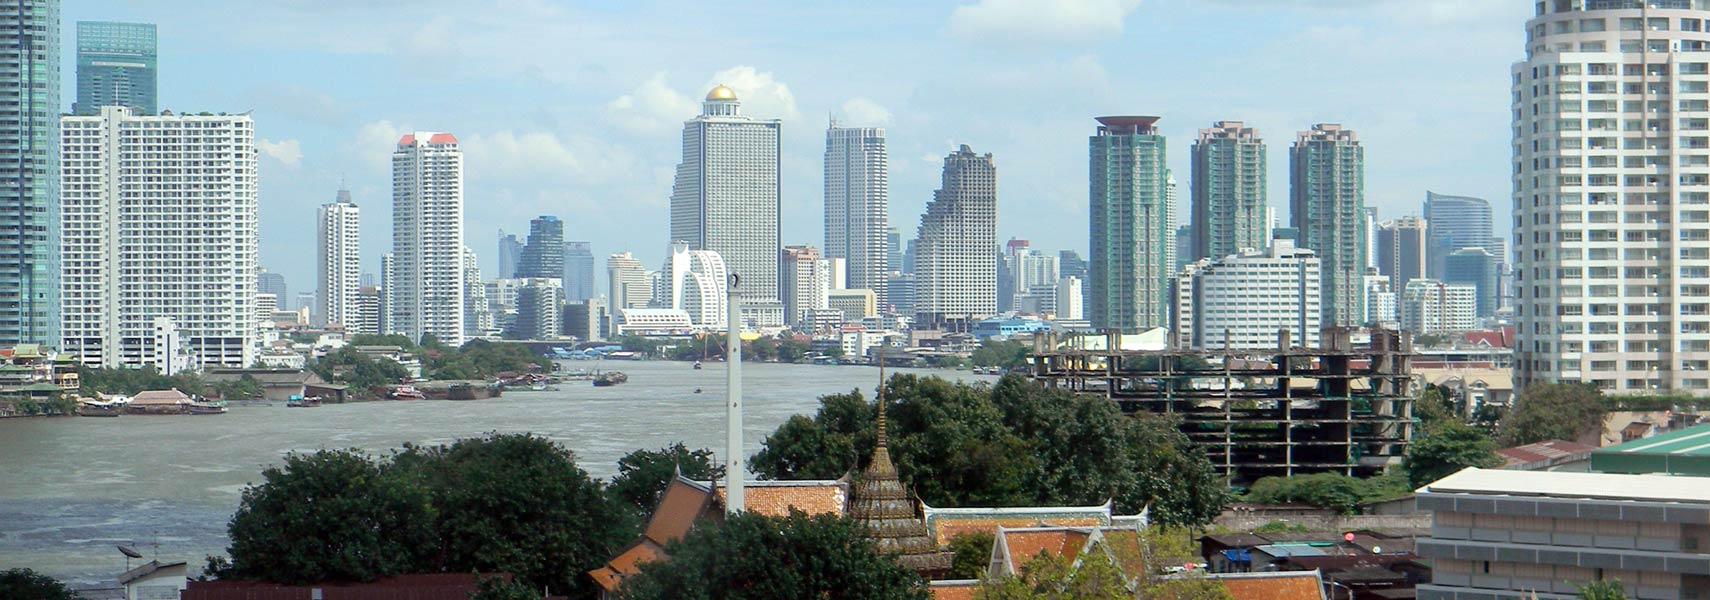 Central Bangkok at Chao Phraya River.